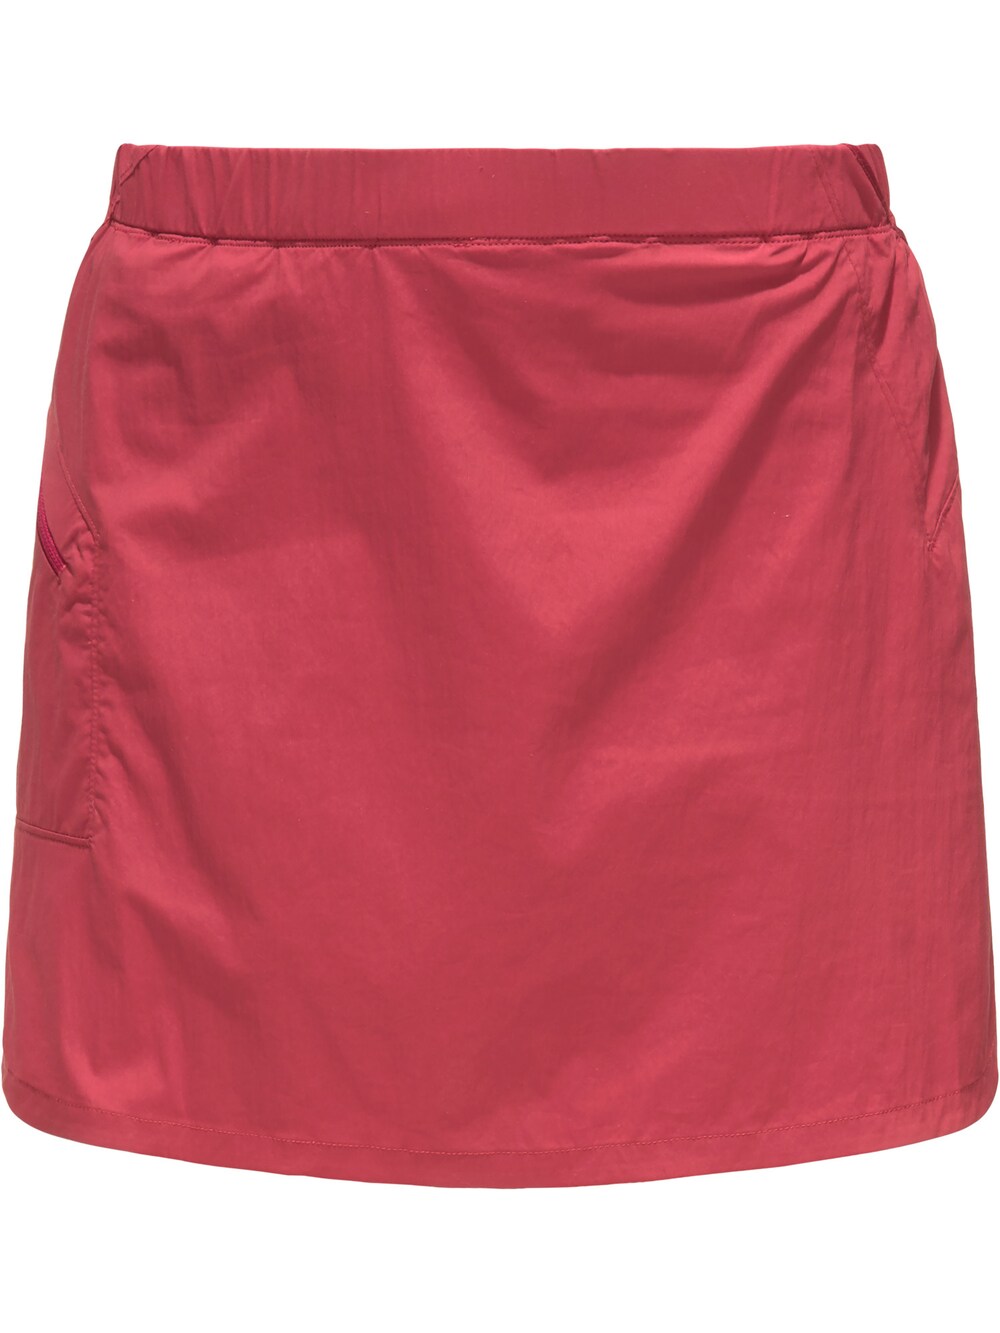 Спортивные шорты Haglöfs Lite, красный